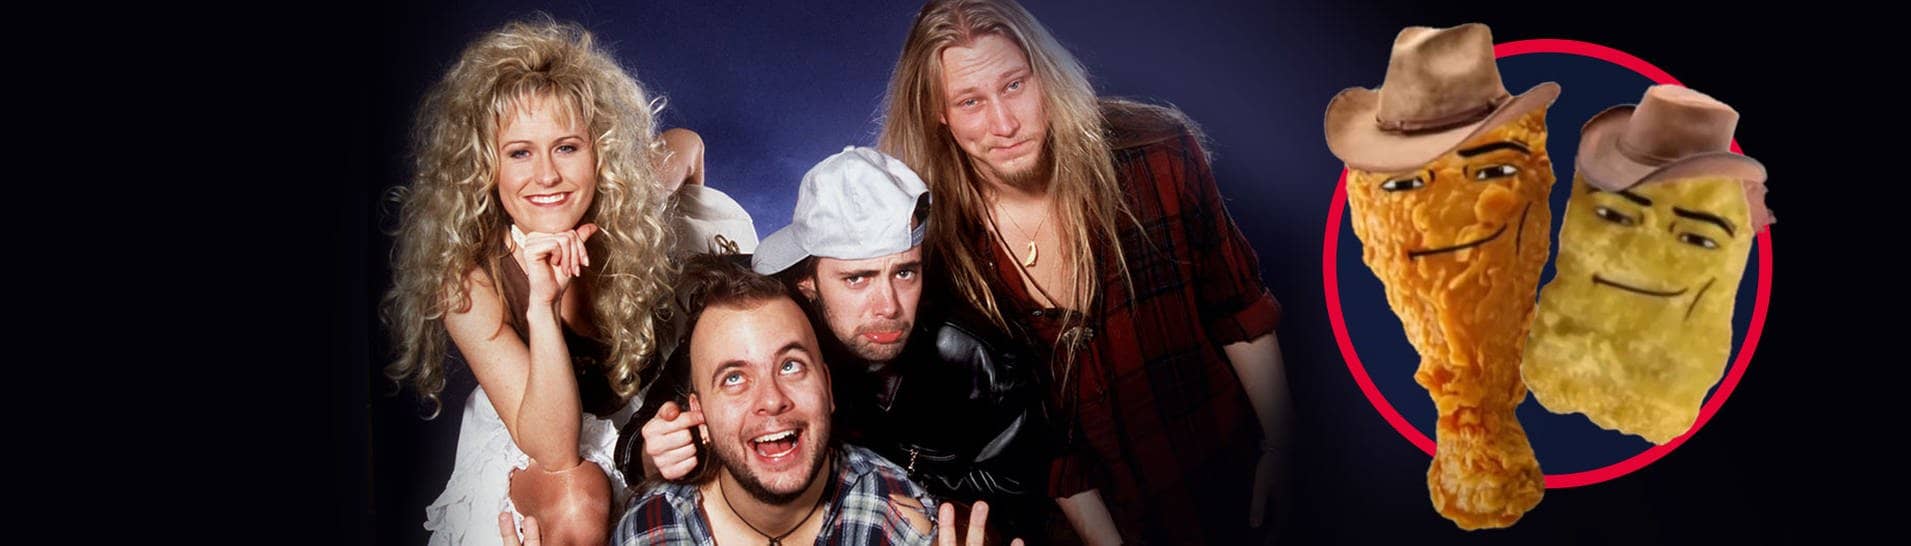 Die schwedische Band Rednex 1995 in Dortmund, durch eine Cover-Version mit einem Comedy-Video mit Chicken Nuggets geht ihr Song „Cotton Eye Joe“ viral